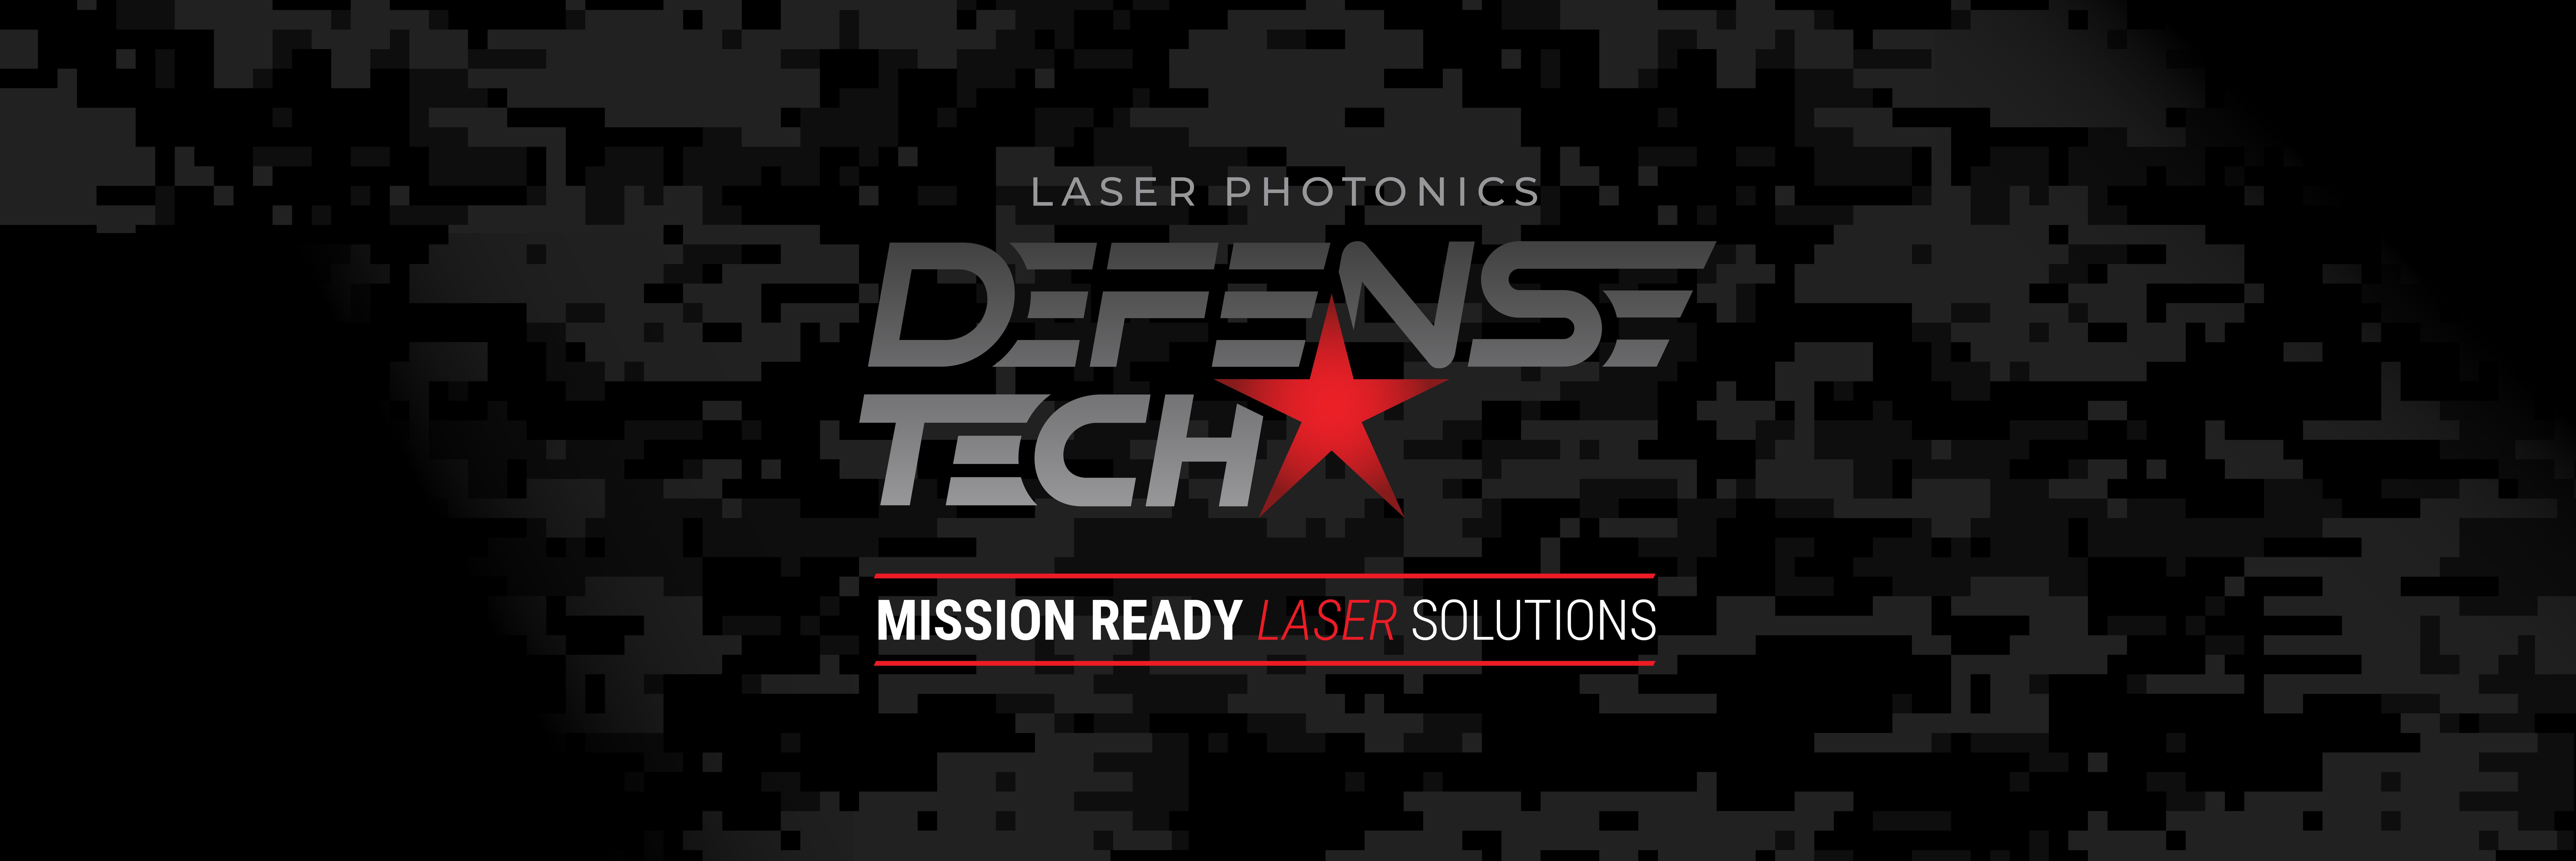 defensetech press release hero banner